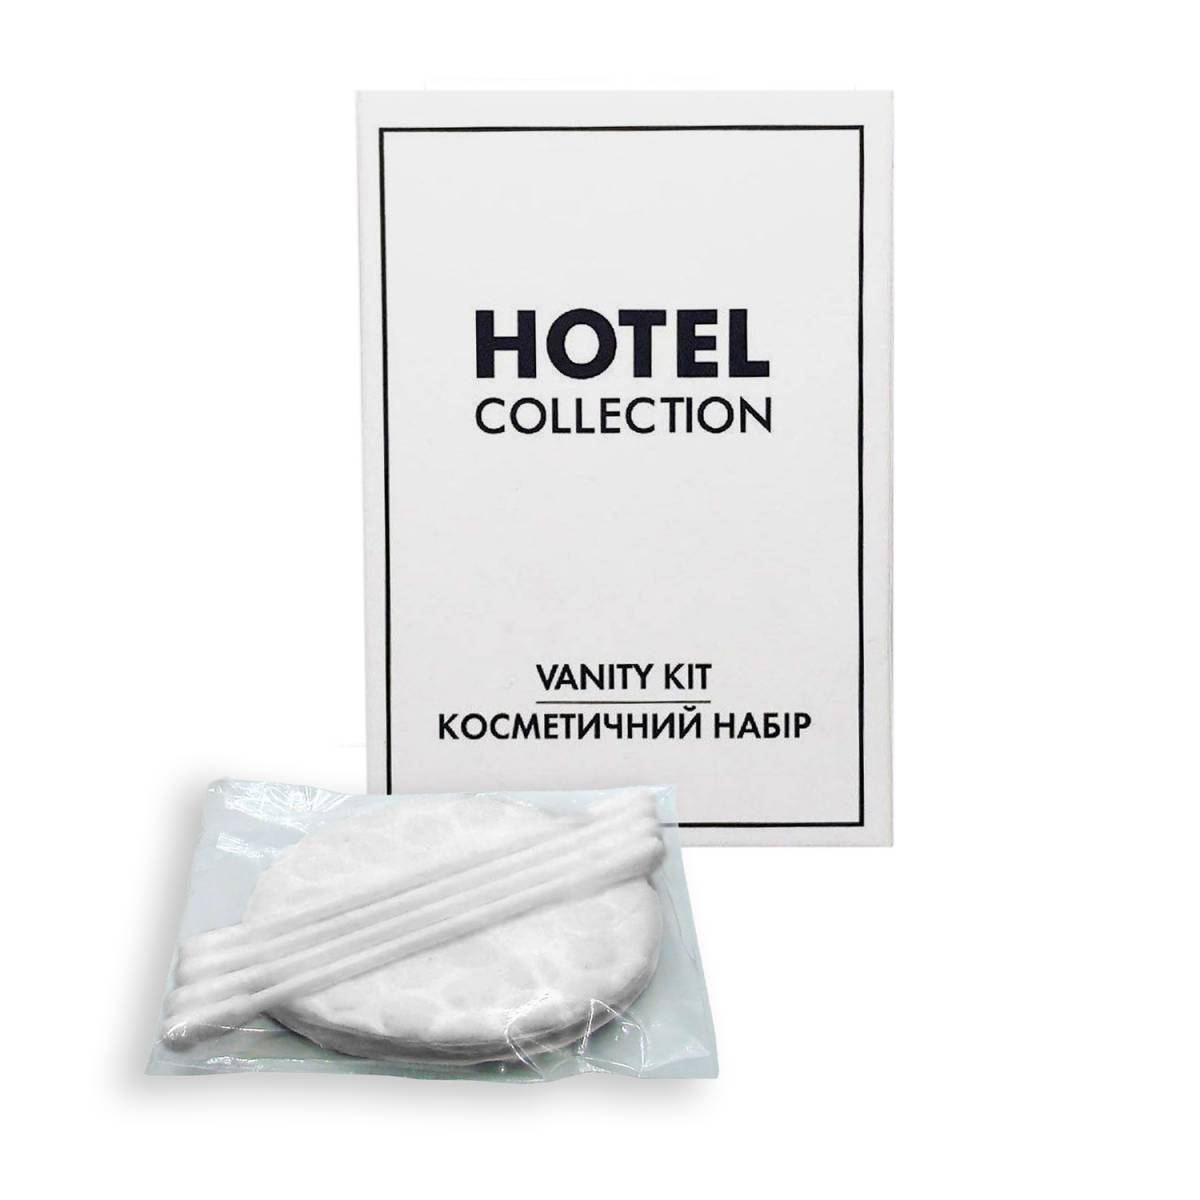 Косметичний набір для готелів, в картонній коробочці HC-VK HSG